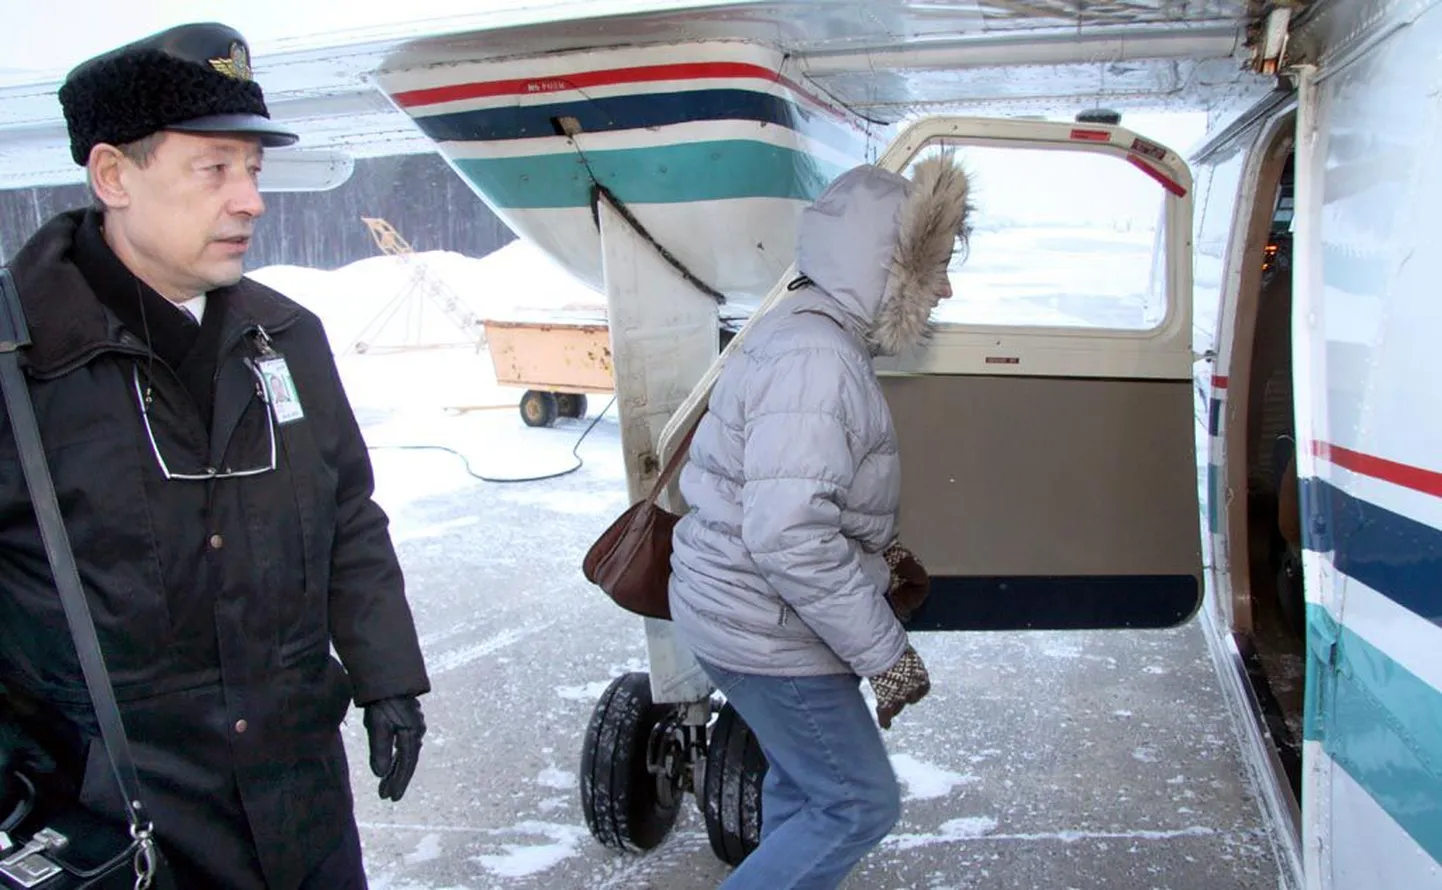 Eile hommikul astus teiste seas Pärnus lennukile Virve Kösteri tütar Urve Uustalu, et jõuda Kihnu õnnitlema ema 82. sünnipäeval. Reisijaid saatis Aviesi piloot Tõnu Ader.